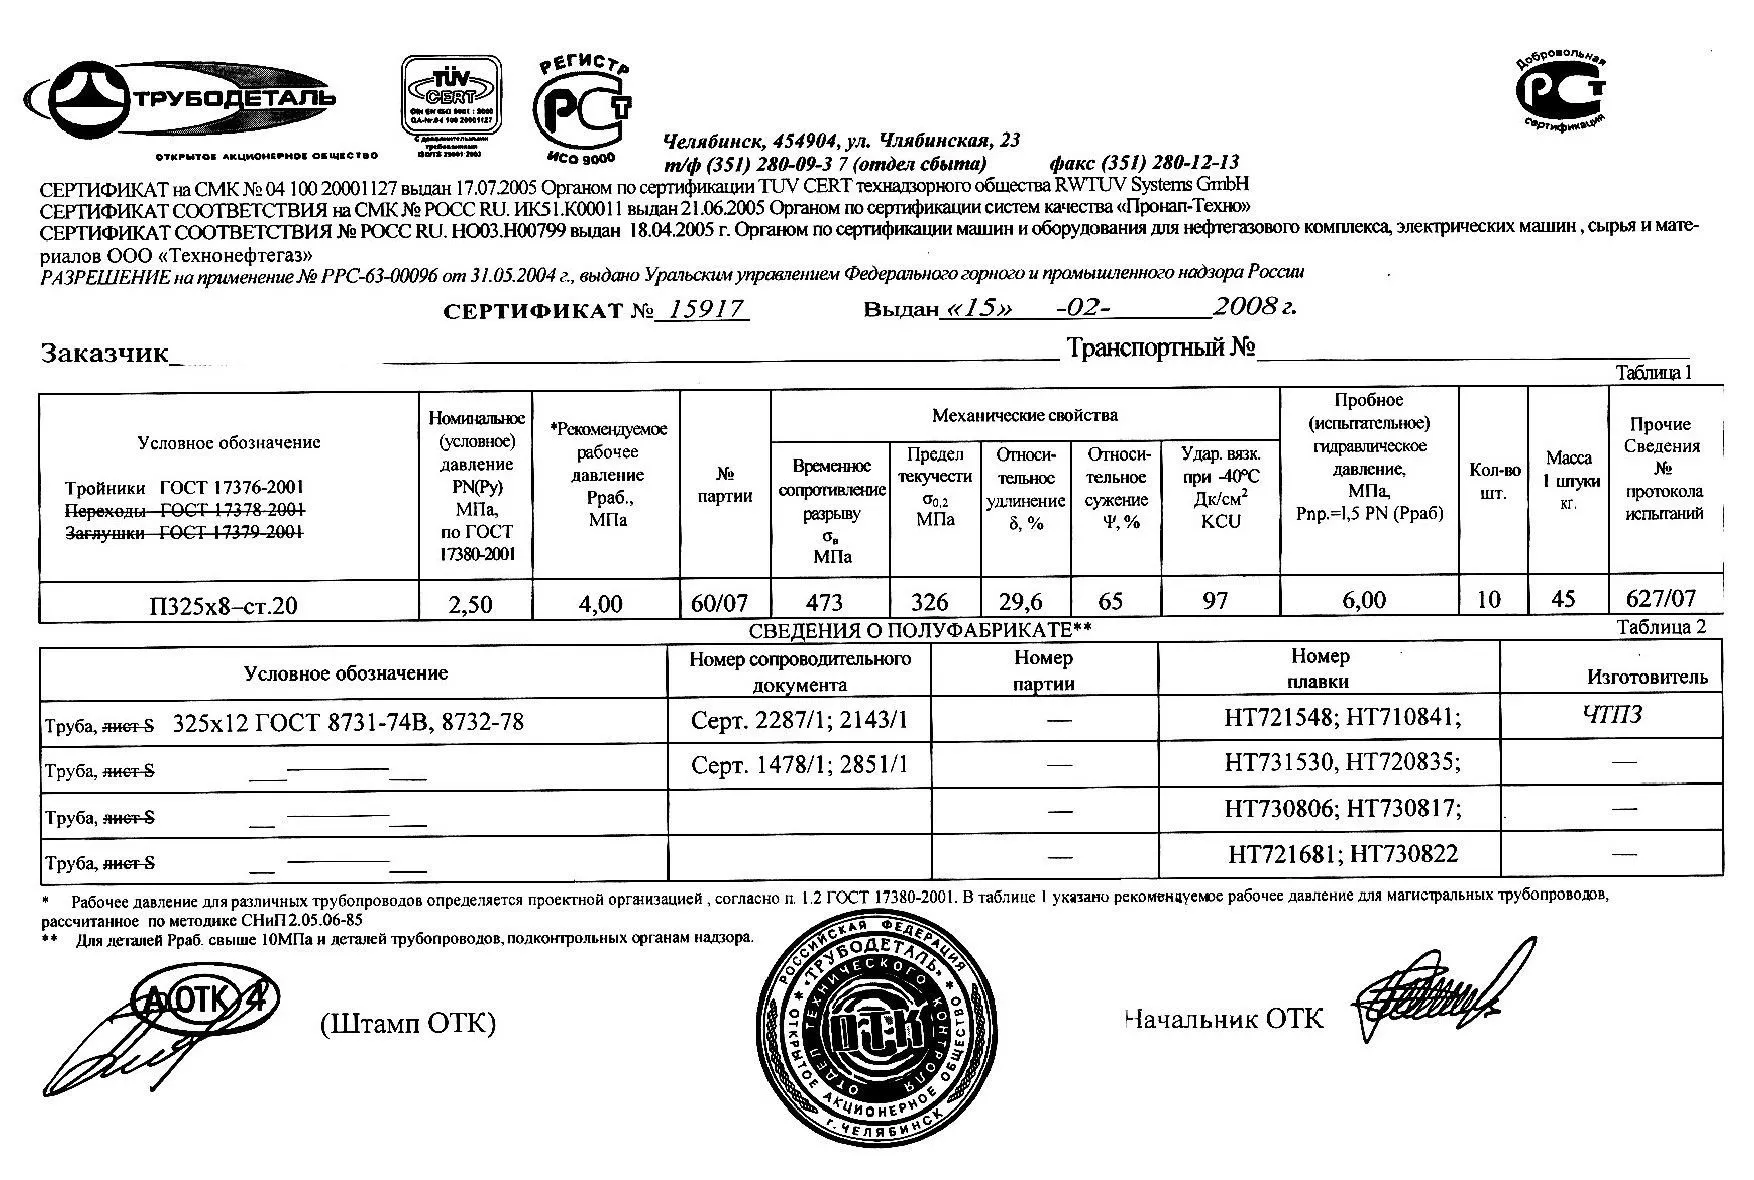 Сертификат на тройники П325х12 от 02-08